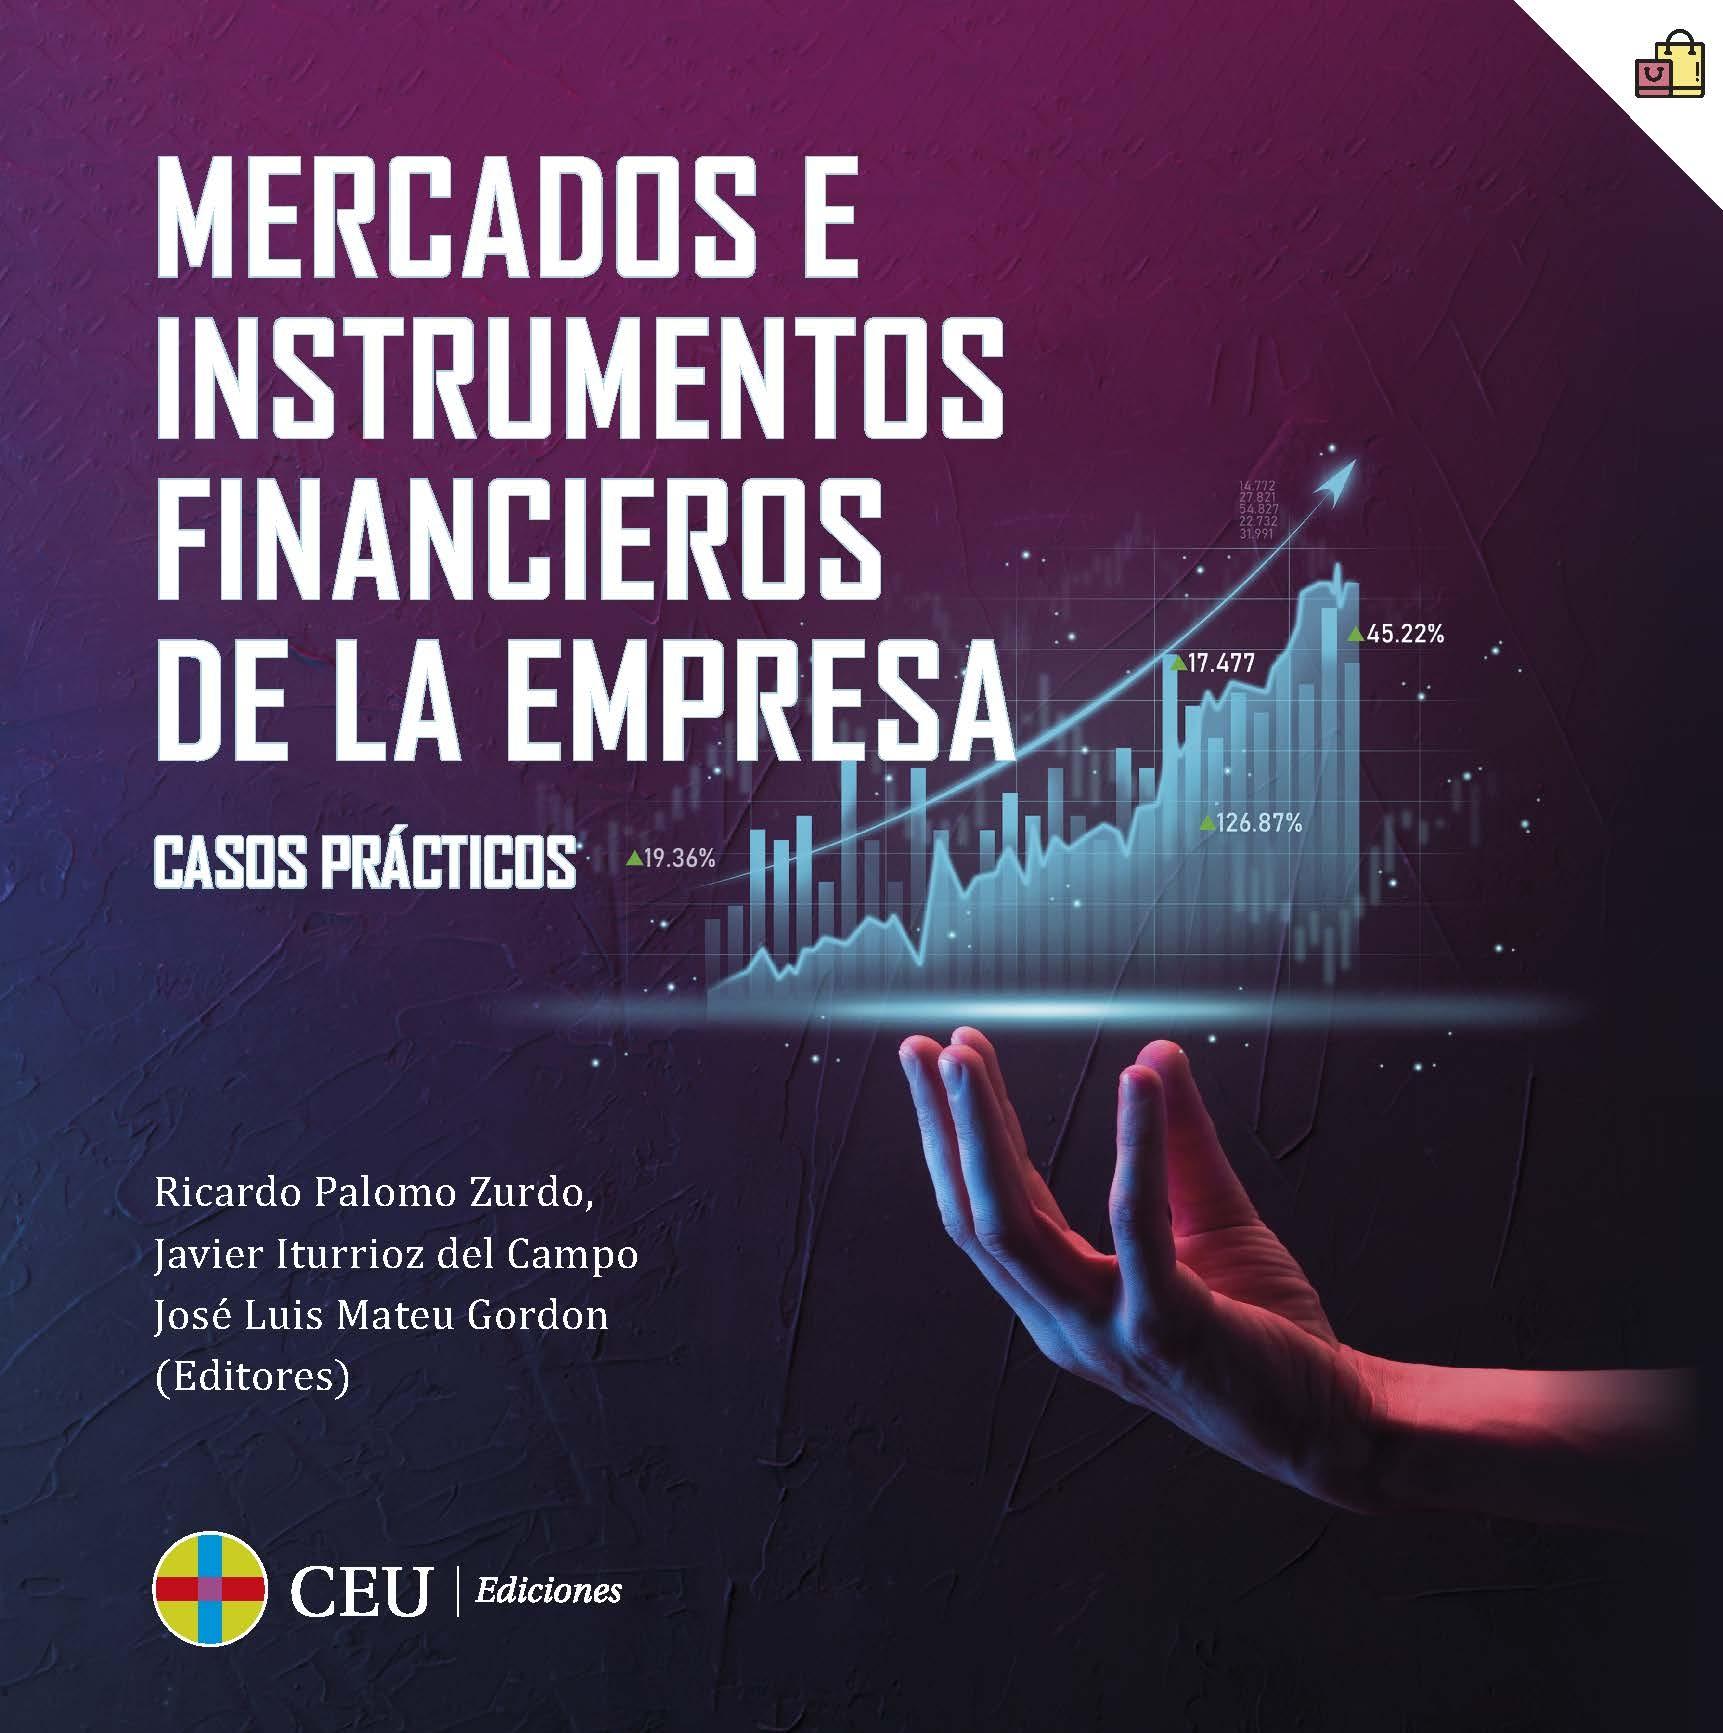 Mercados e instrumentos financieros de la empresa "Casos prácticos"